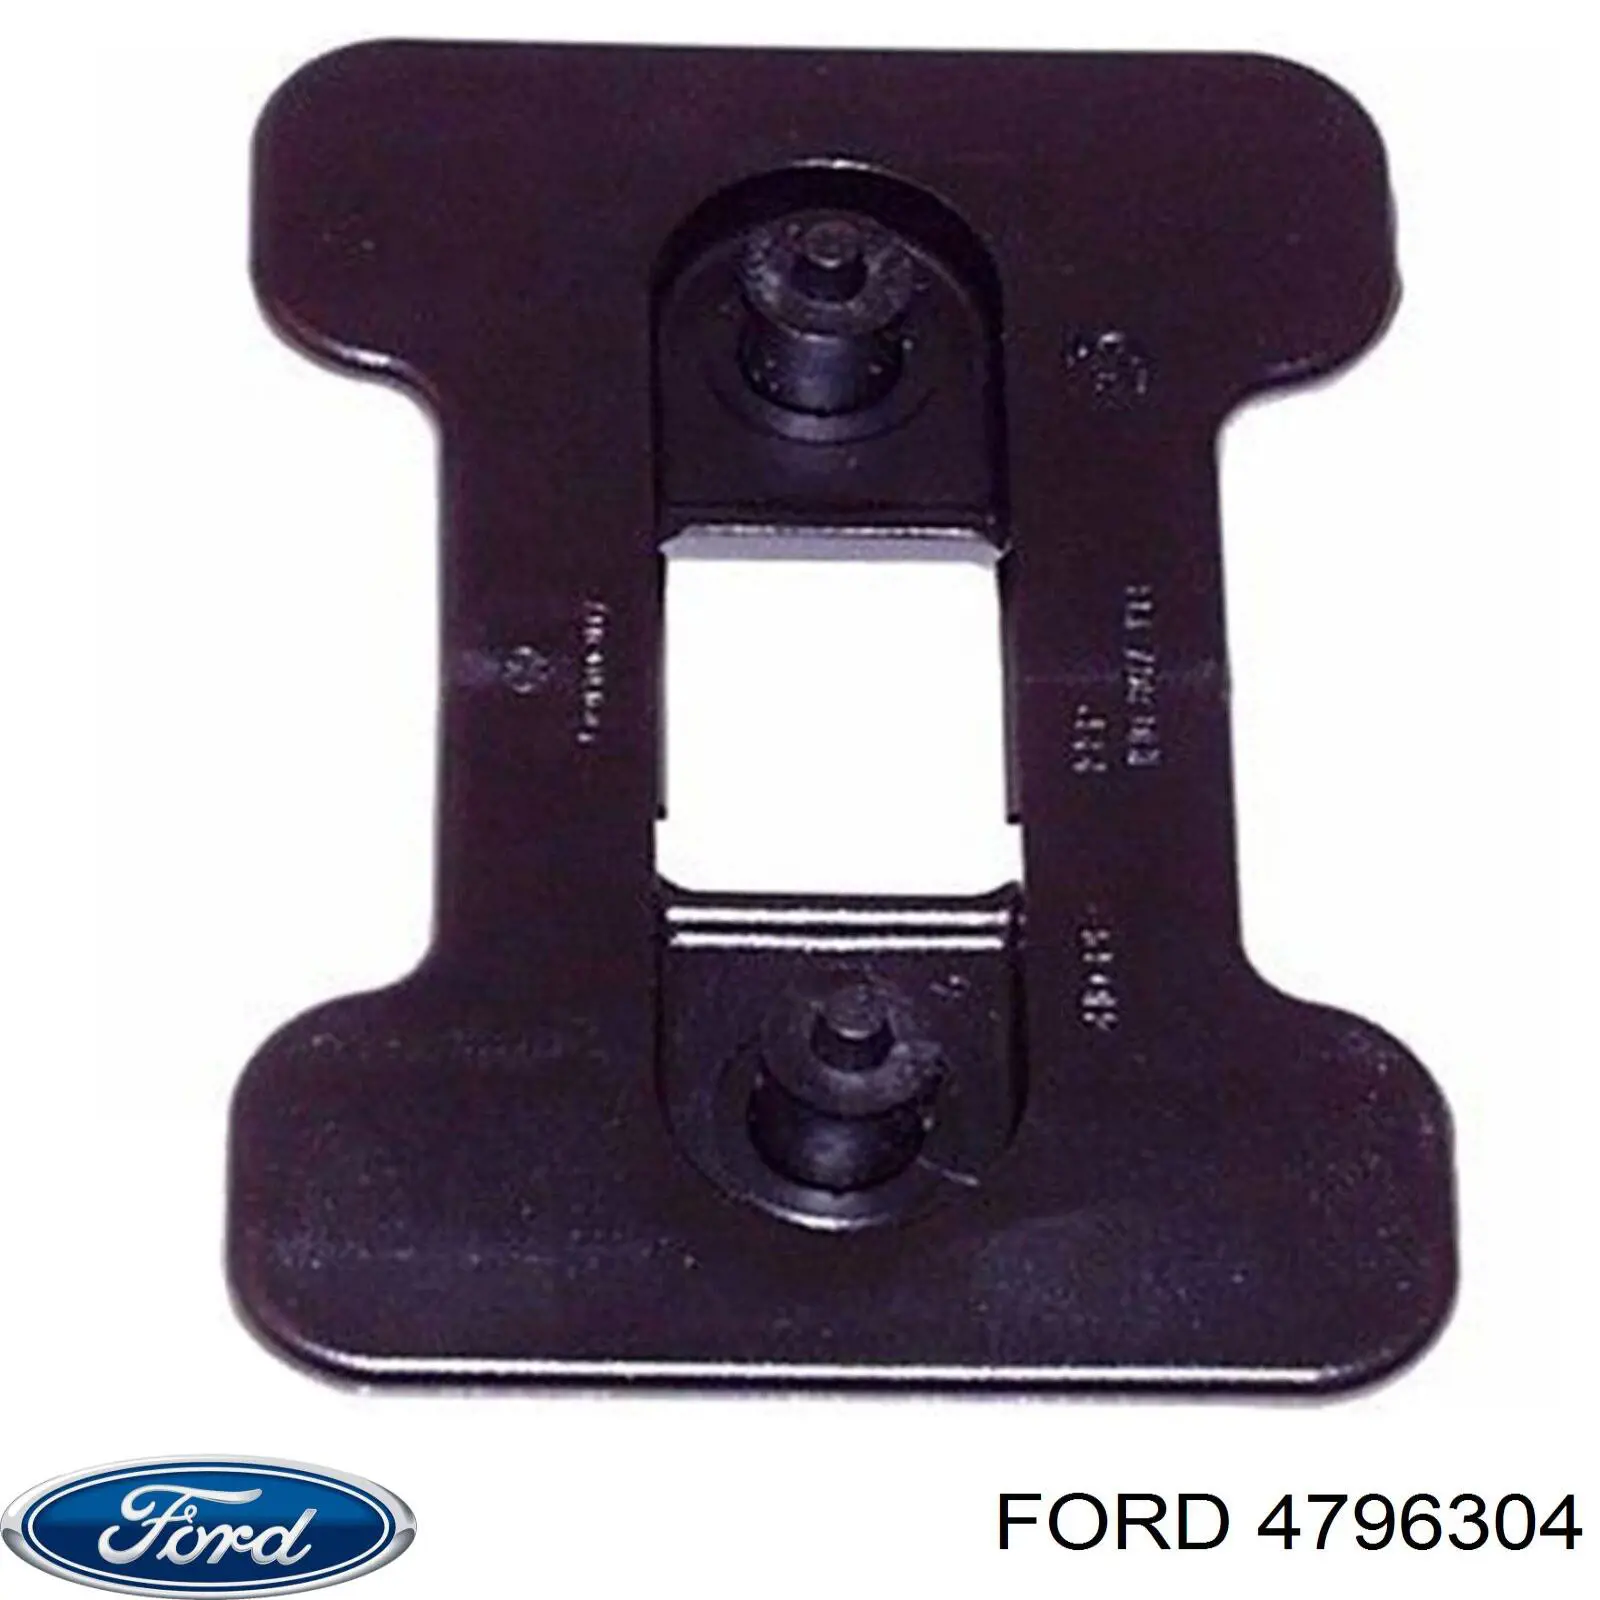 4796304 Ford ролик двери боковой (сдвижной левый верхний)